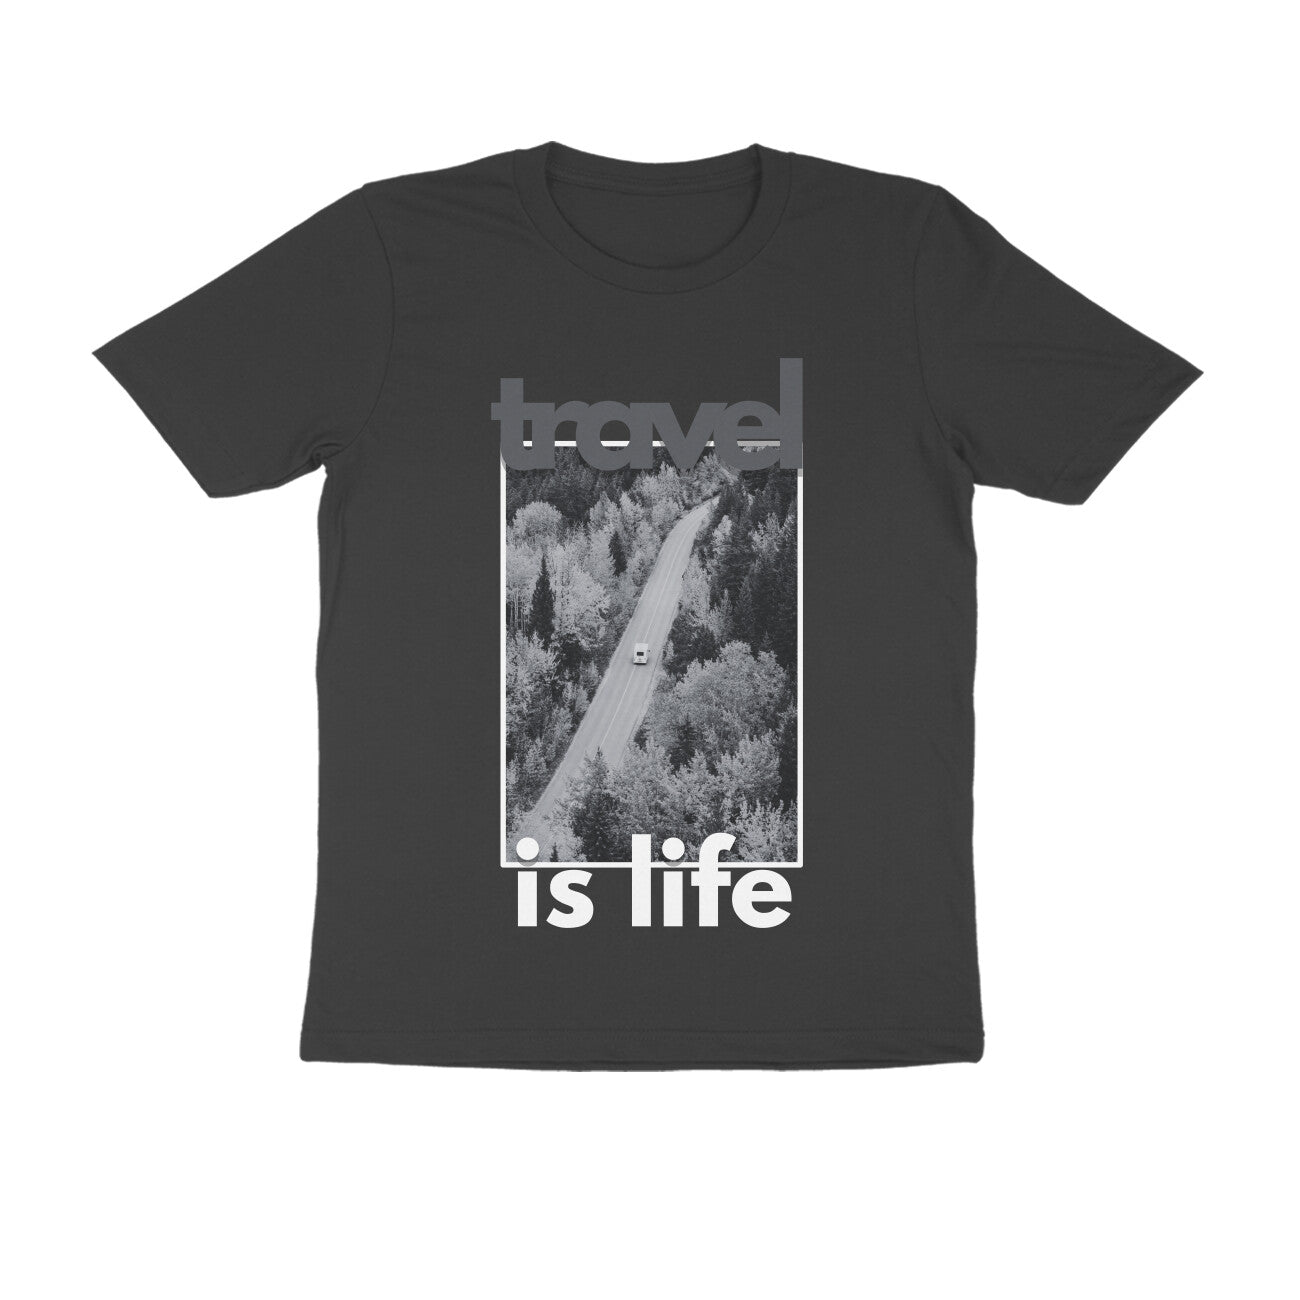 Travel is Life Van Gray Men's T-shirt